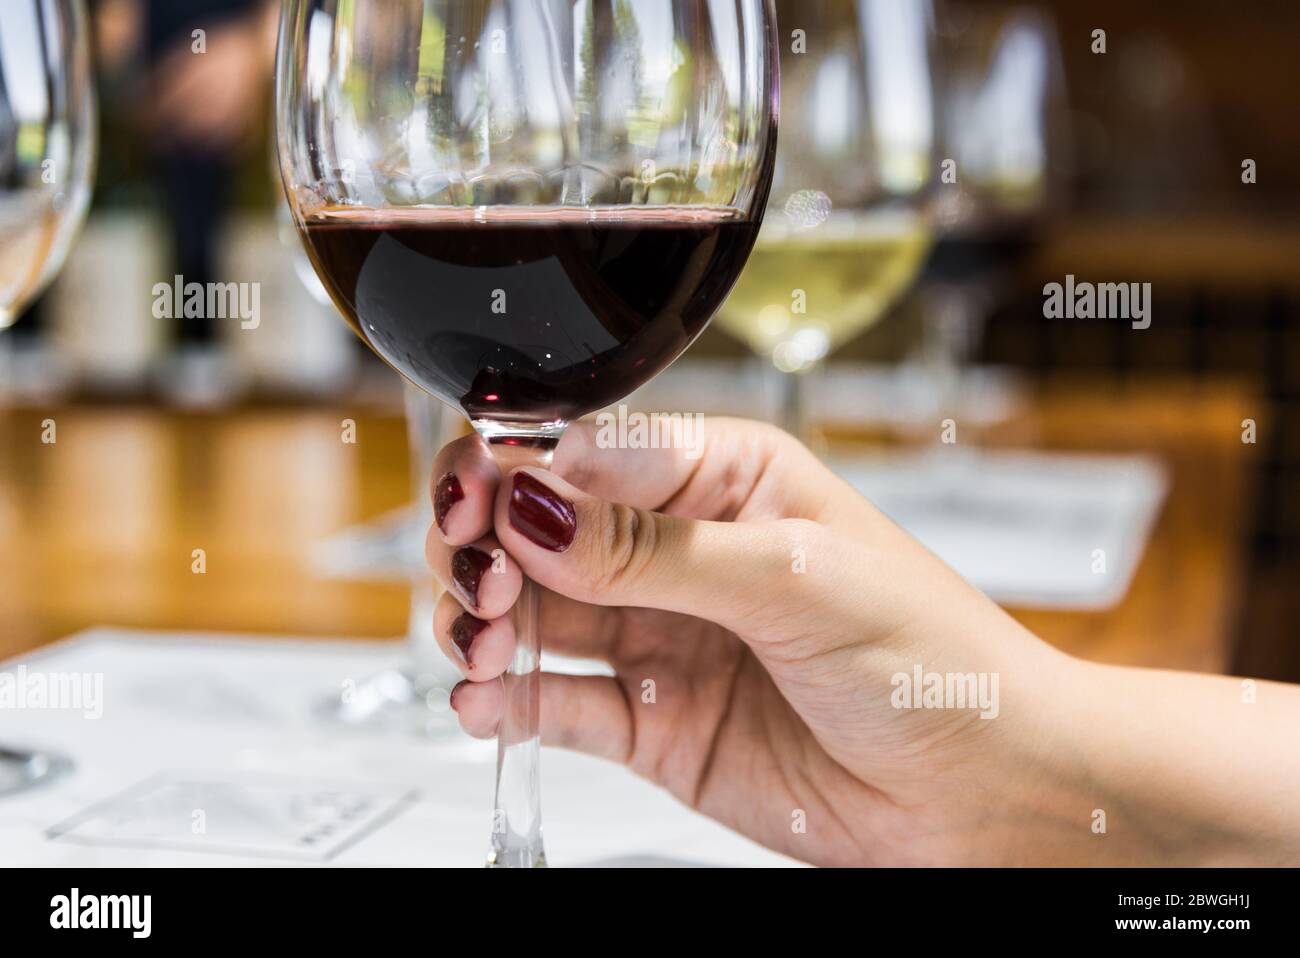 Eine junge Frau, die ein Weinglas mit Rotwein hält Stockfotografie - Alamy